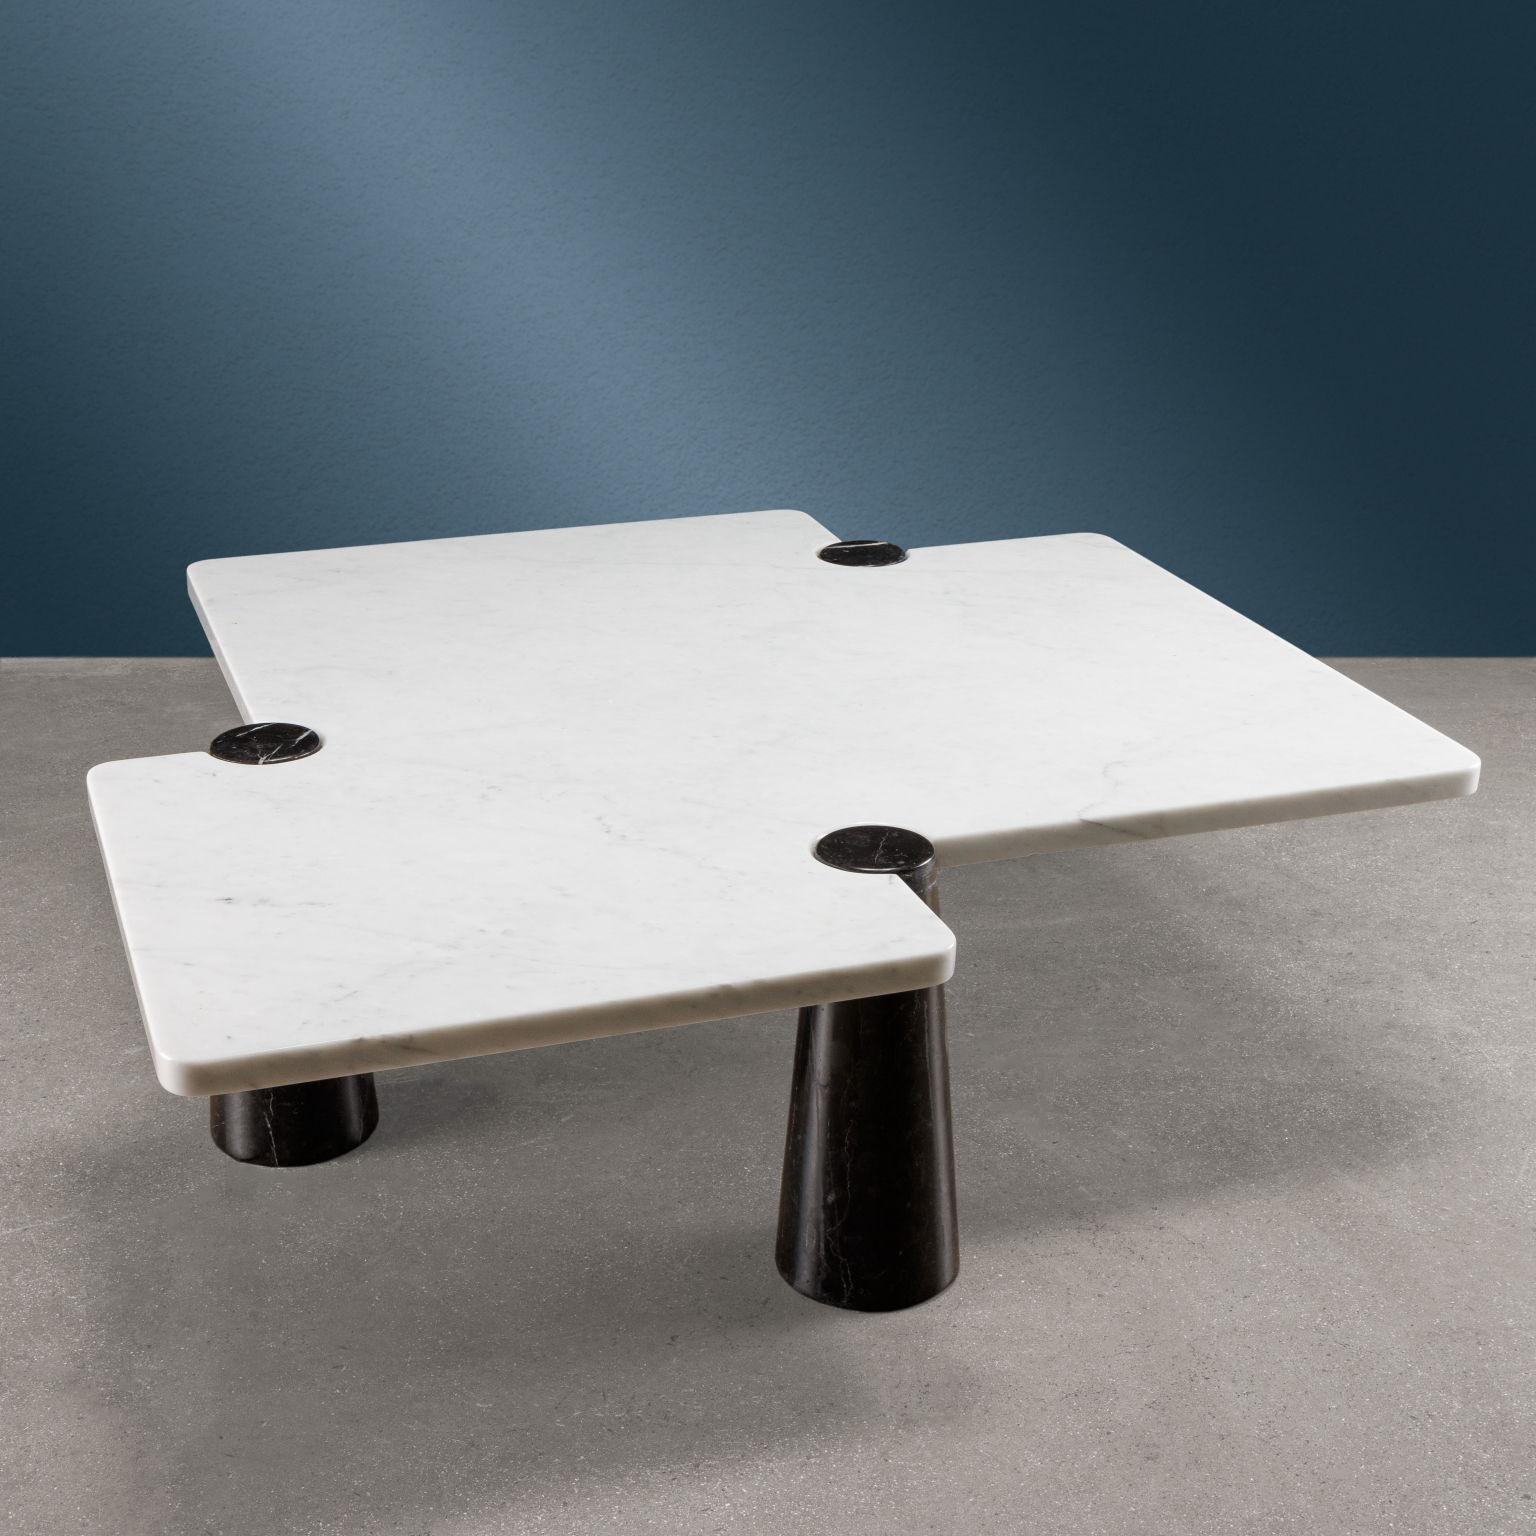 Tavolino in marmo bi colore modello 'Freccia' serie 'Eros' disegnato da Angelo Mangiarotti e prodotto da Skipper negli anni '70.